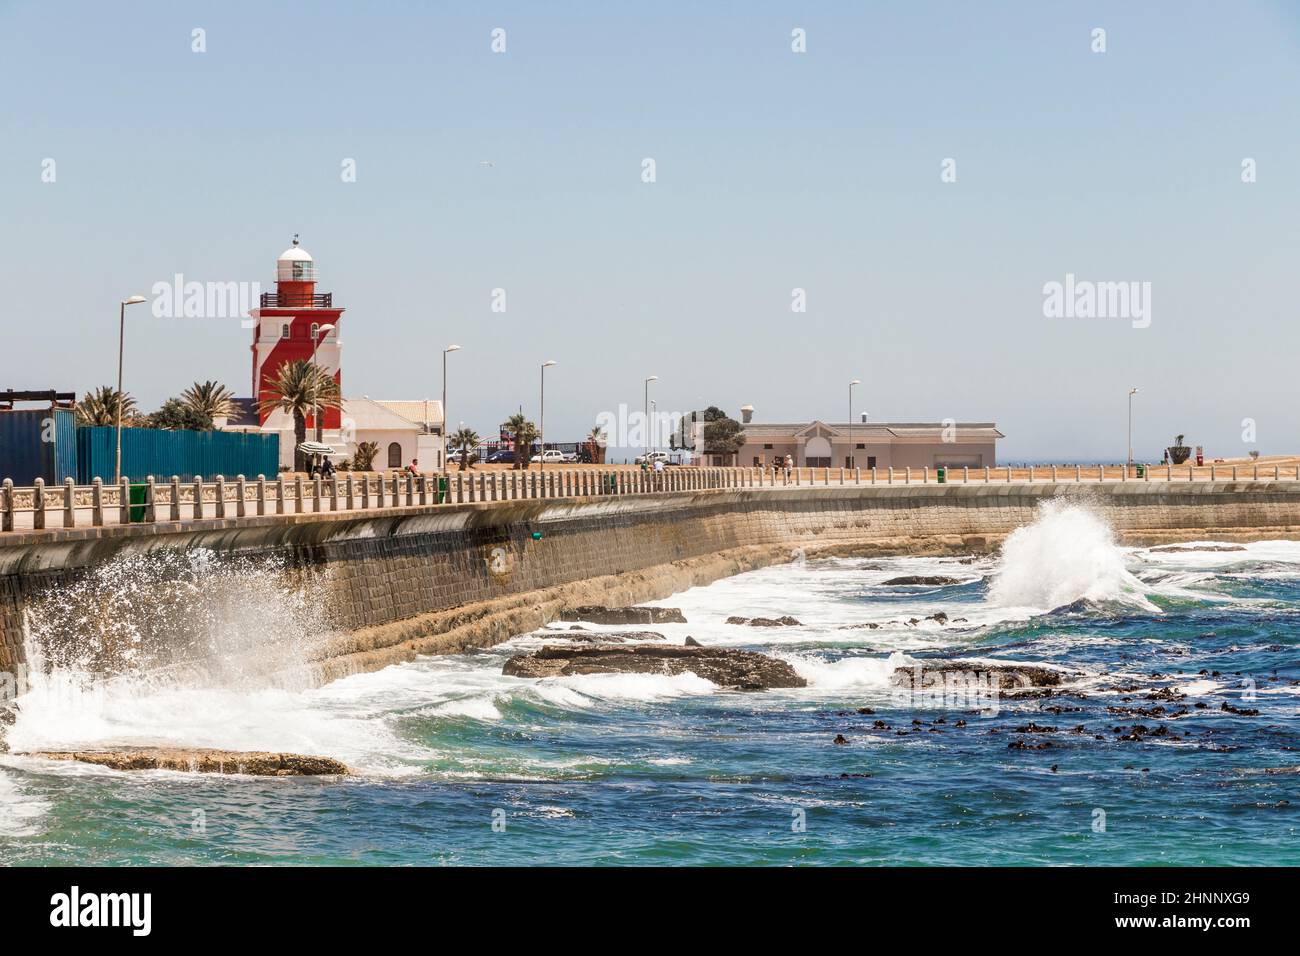 Les vagues rebondissent contre la protection contre les vagues, brise-lames, Sea point Cape Town. Banque D'Images